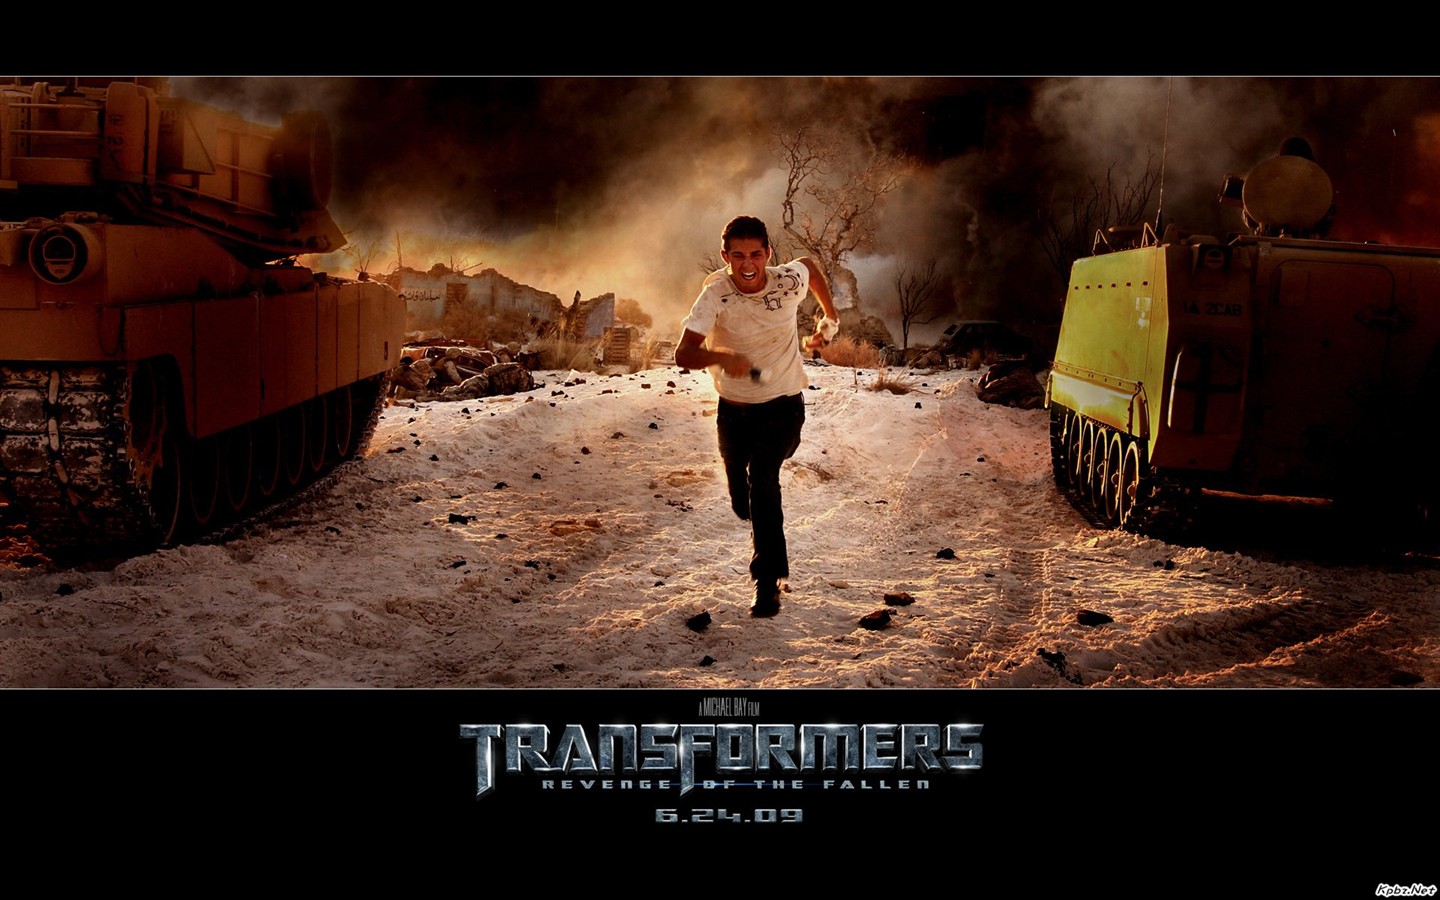 Transformers HD papel tapiz #2 - 1440x900